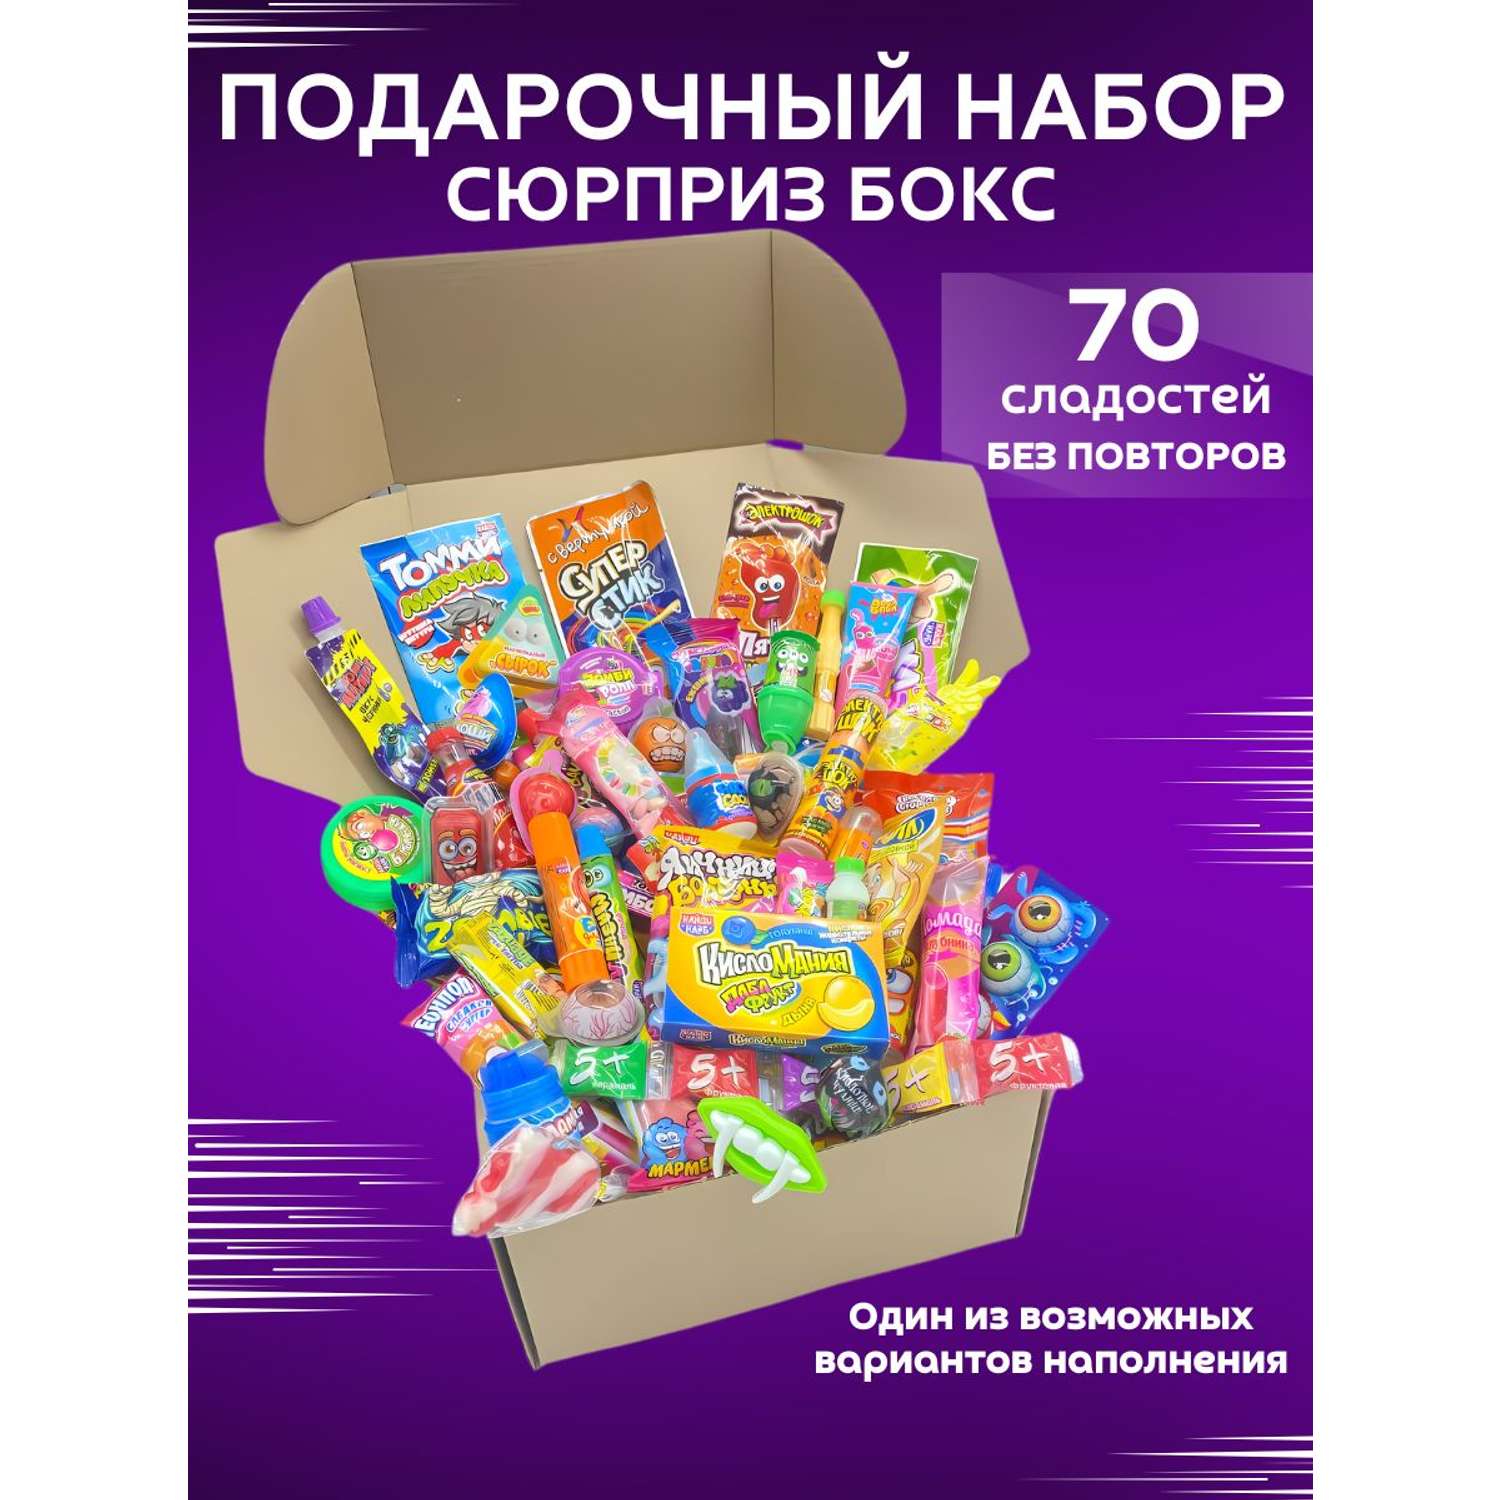 Сладкий подарочный бокс VKUSNODAY 70 конфет - фото 1